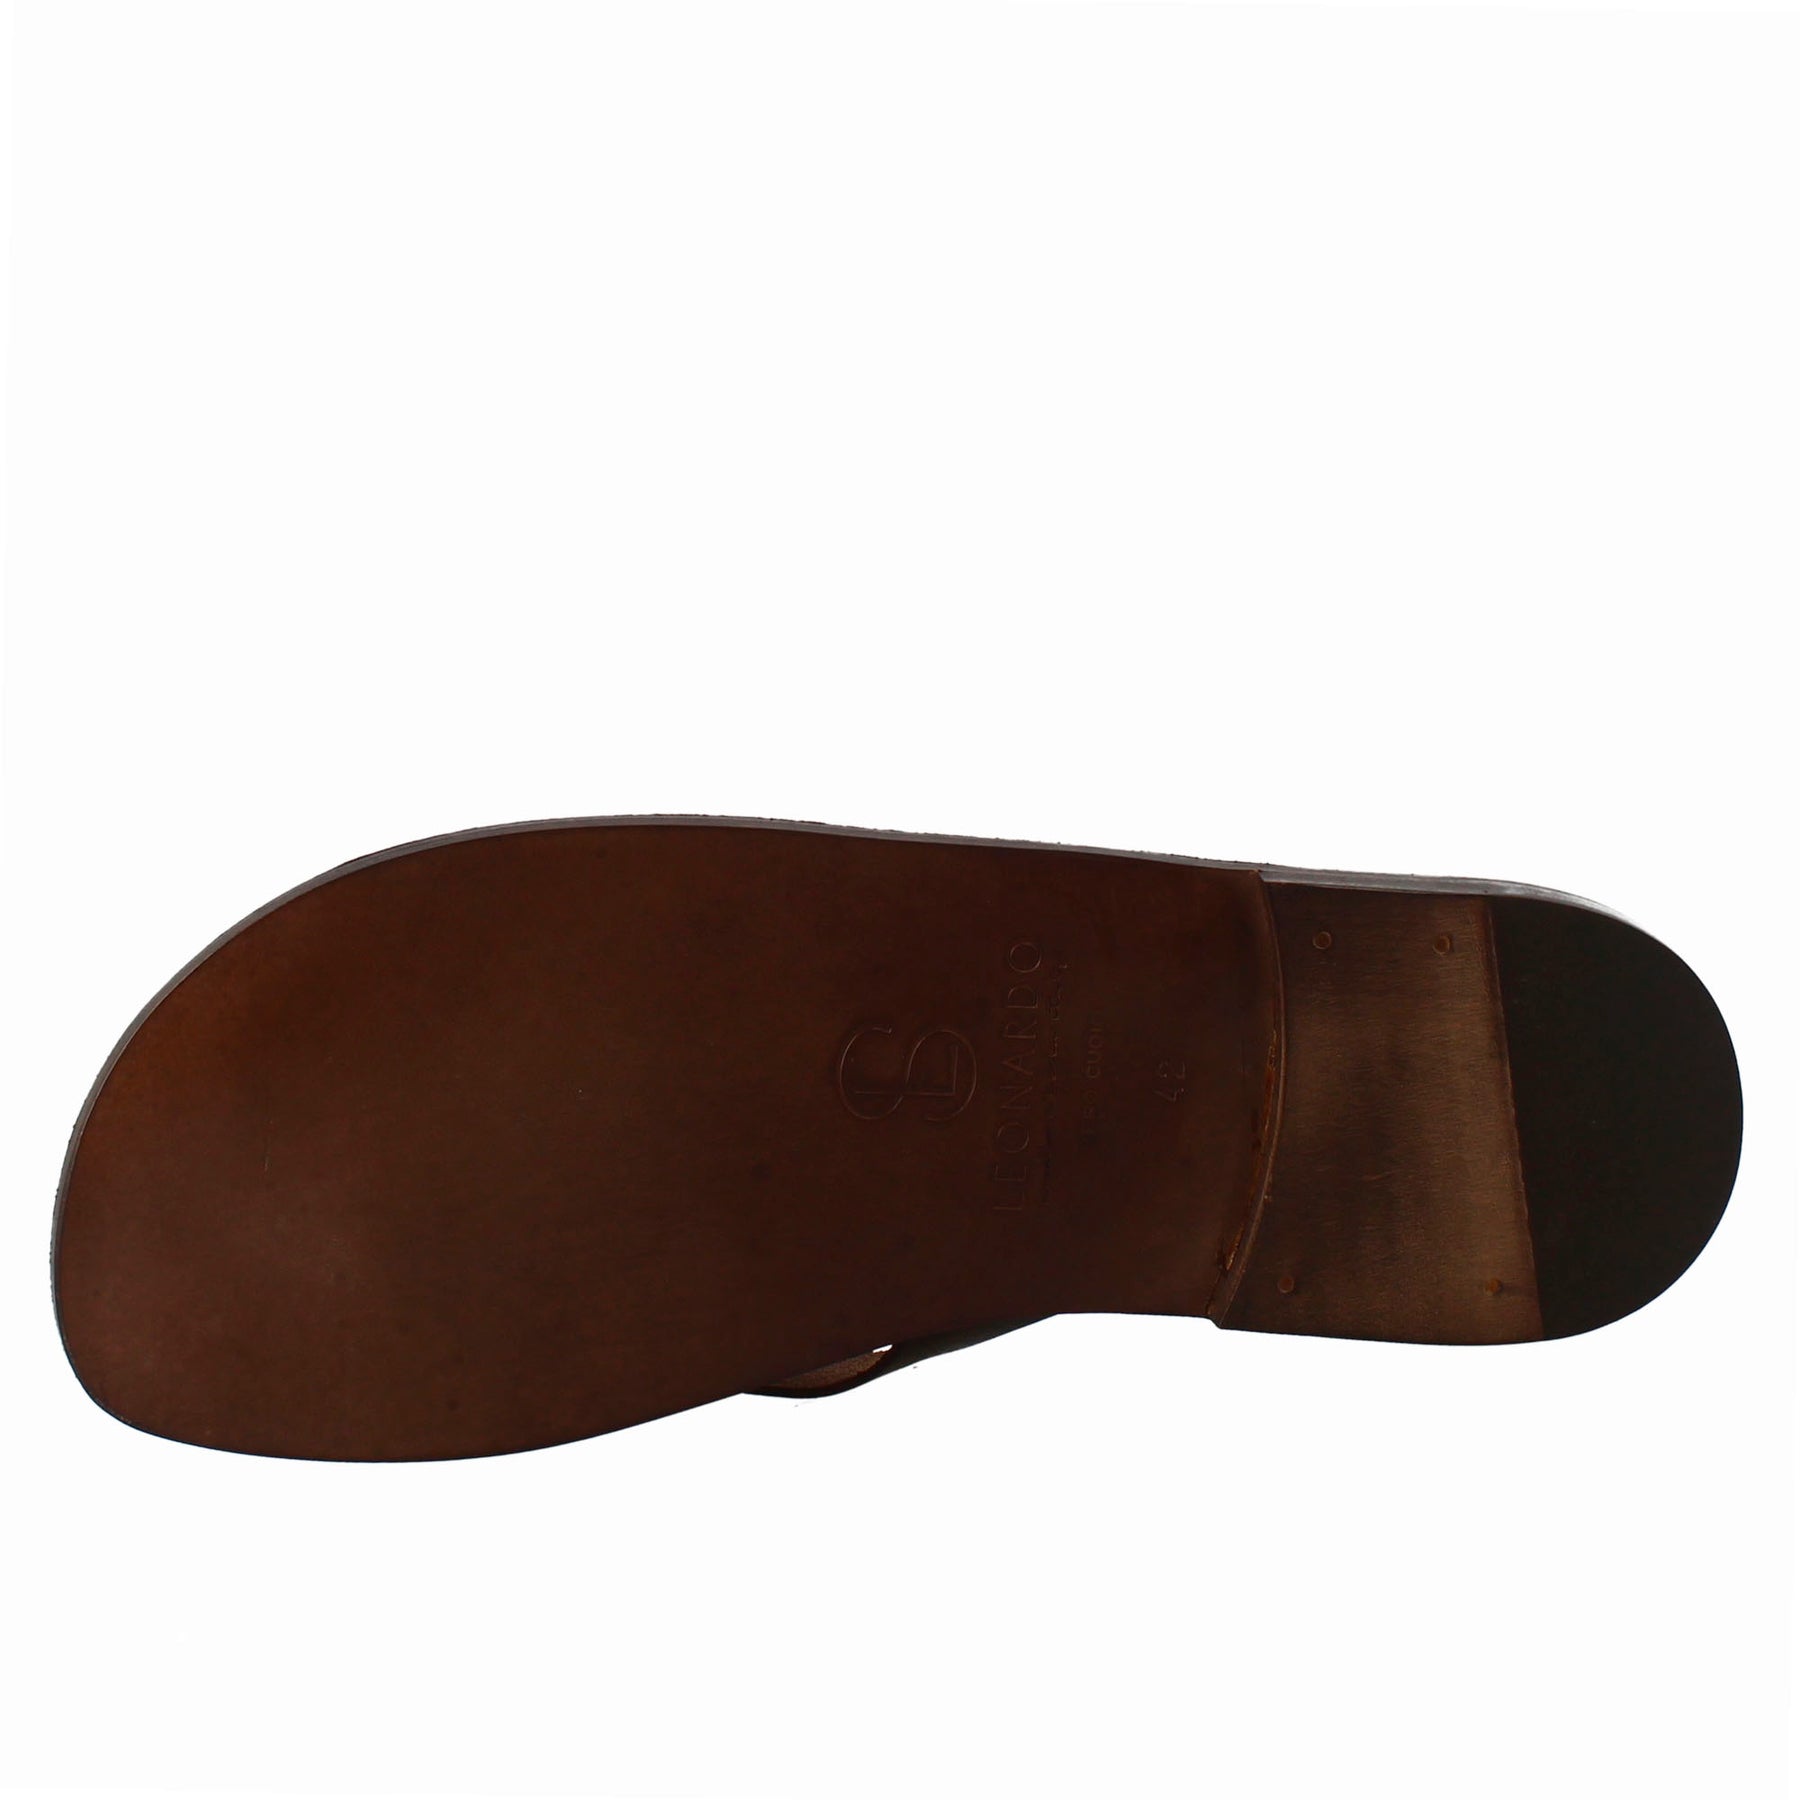 Sandali arezzo modello gladiatore da uomo in pelle color marrone